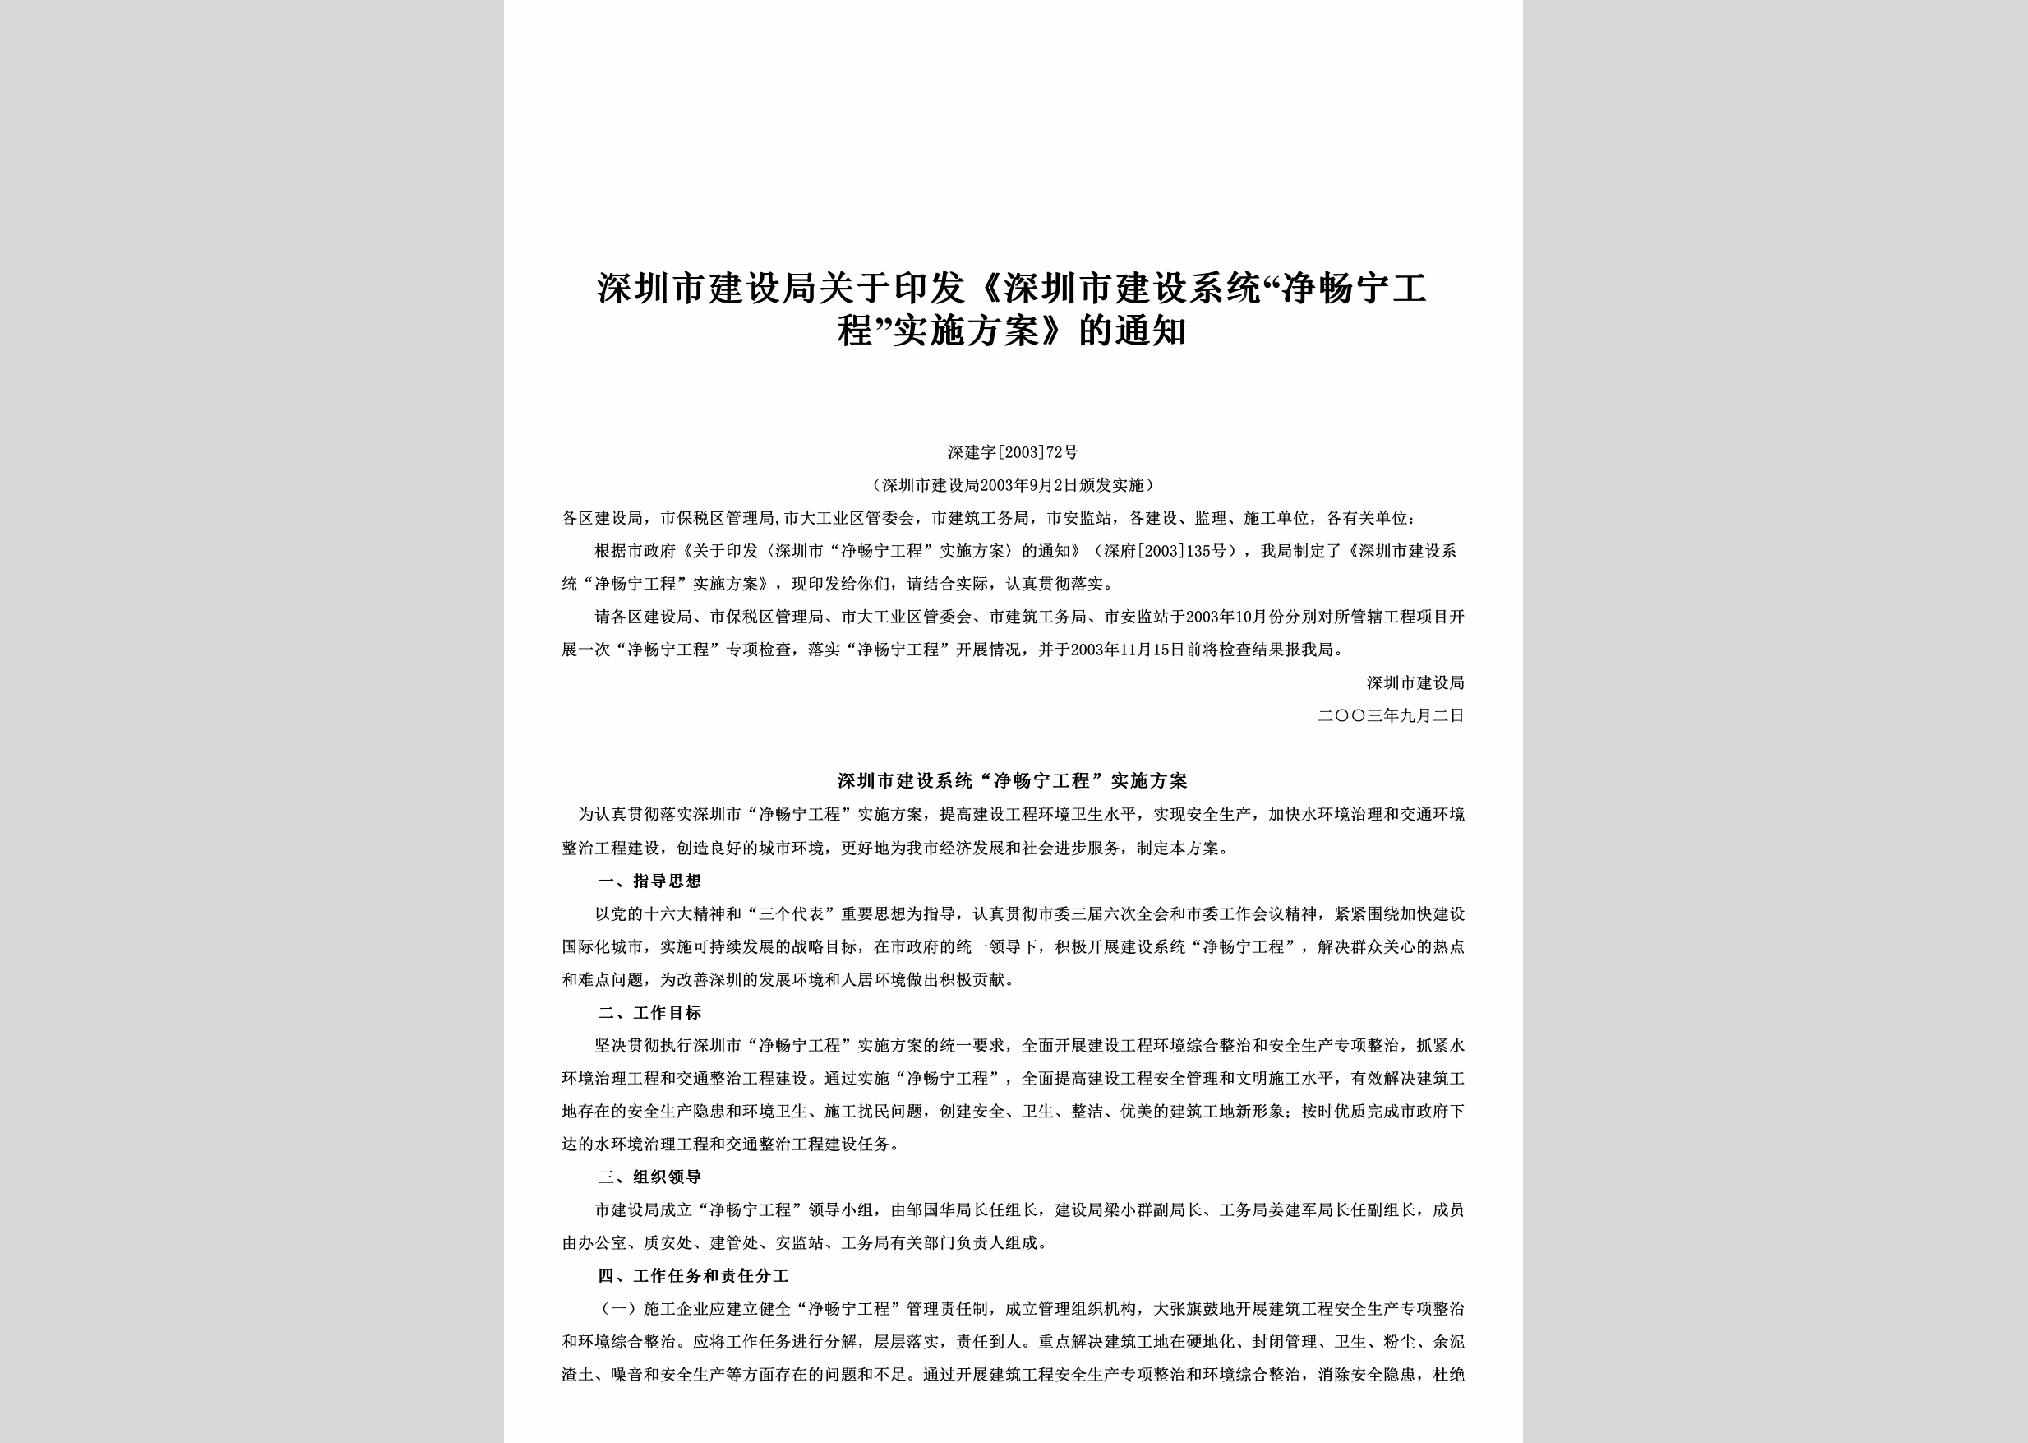 深建字[2003]72号：关于印发《深圳市建设系统“净畅宁工程”实施方案》的通知